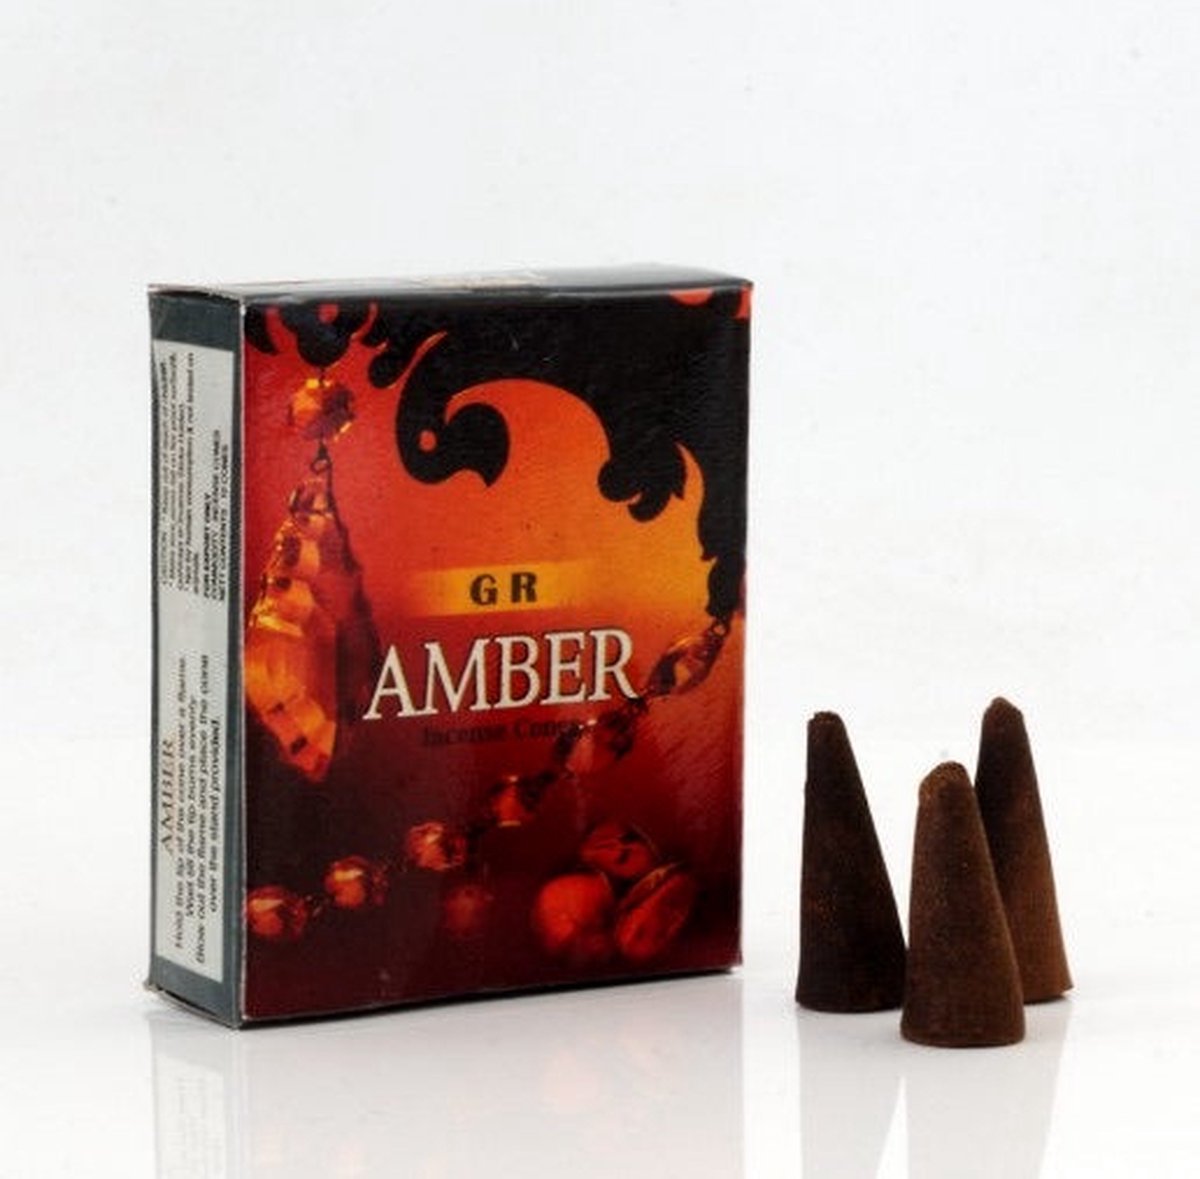 Wierookkegels 'Amber', GR, 10 cones (20 gram)